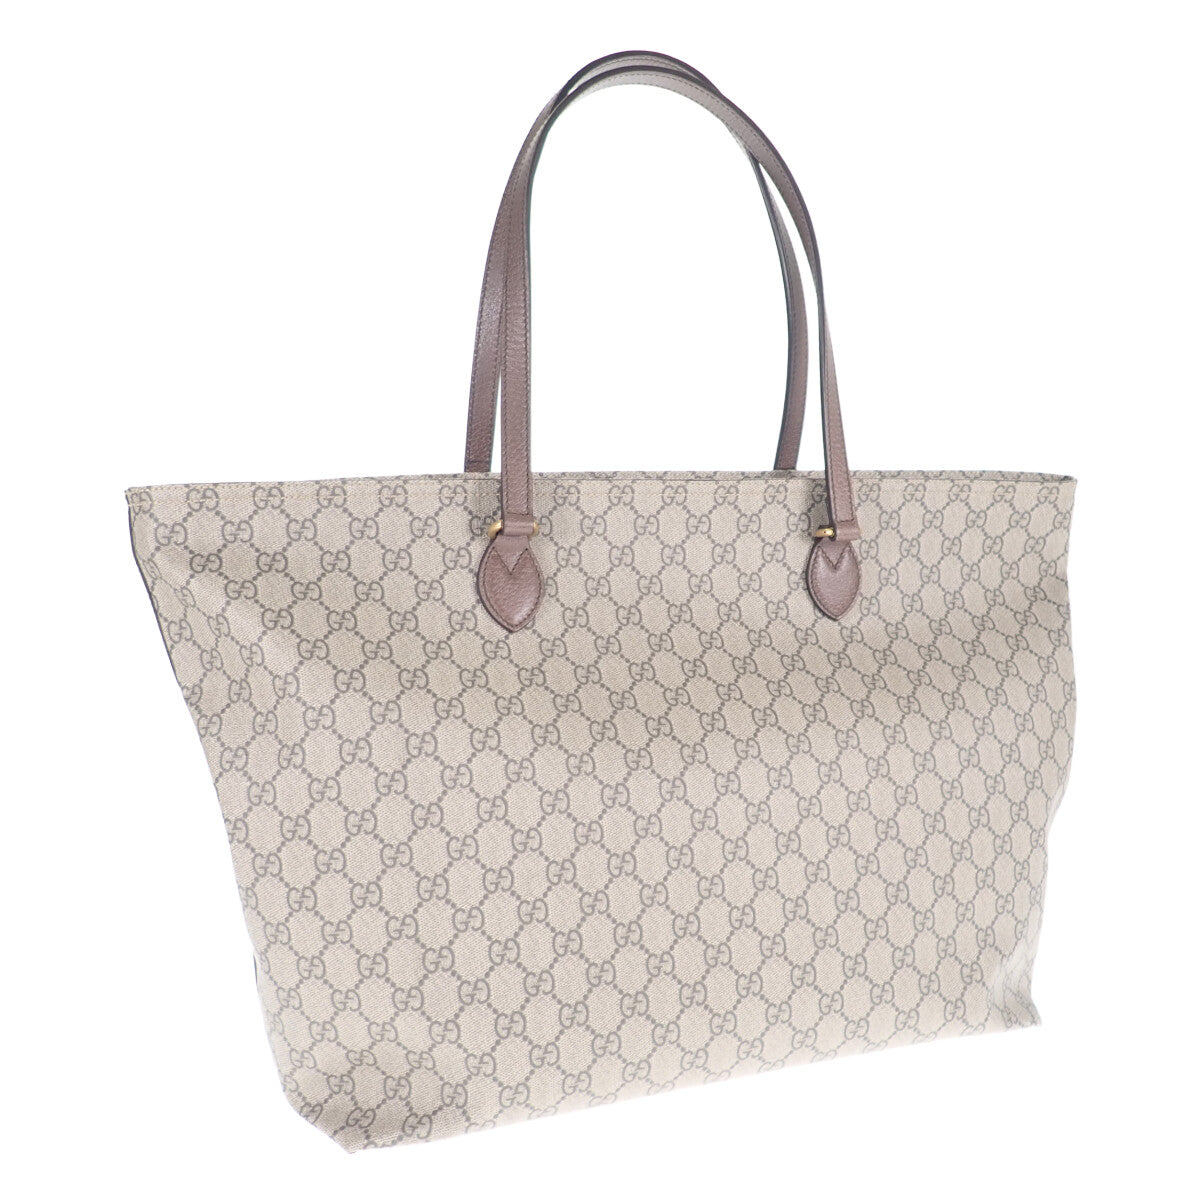 Gucci GG Supreme Tote Bag Canvas Tote Bag 547974 in Excellent condition